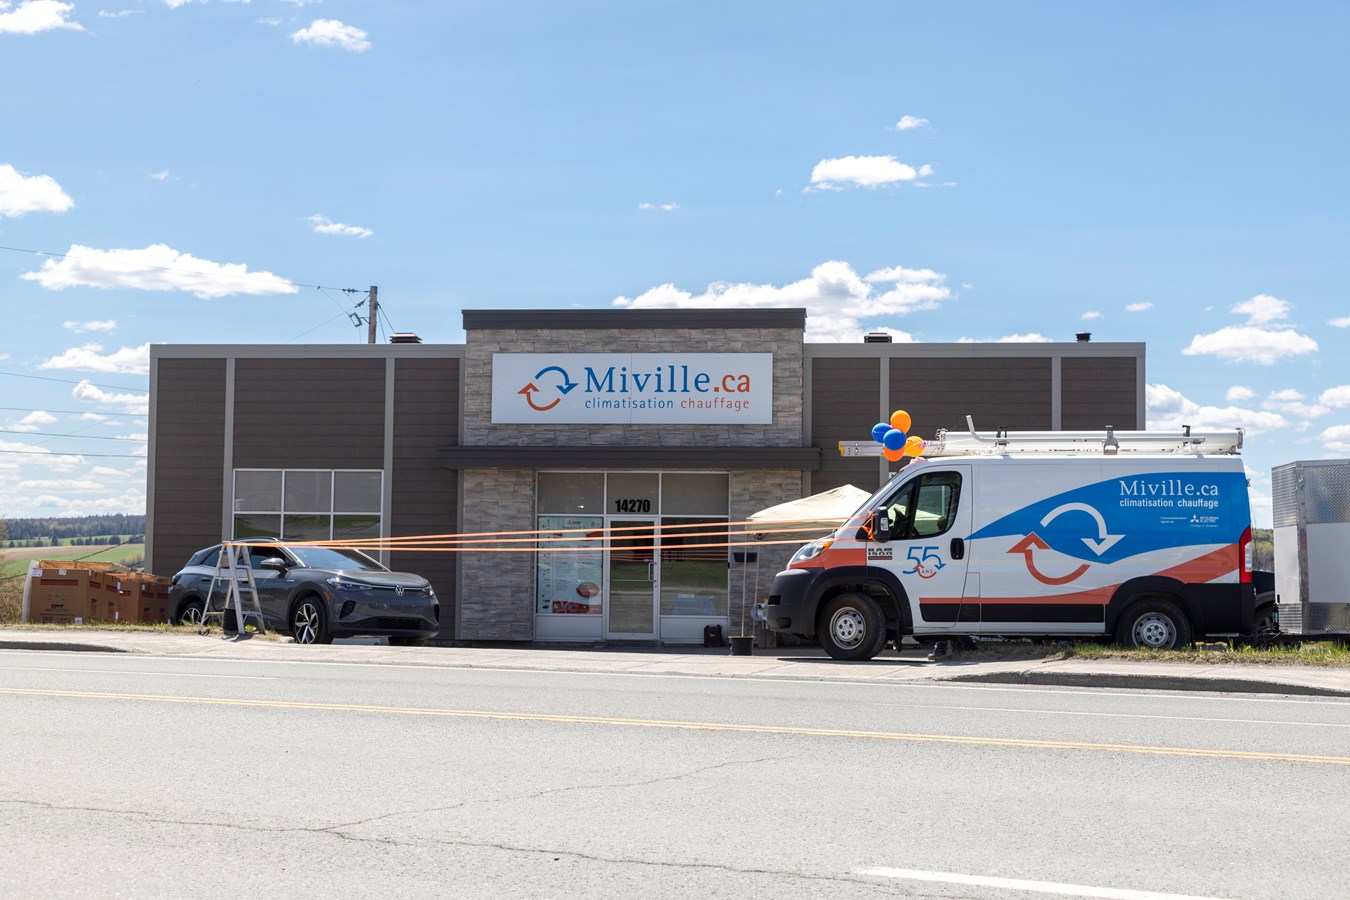 Miville ha aperto un nuovo ufficio a Saint-Georges per servire meglio i suoi clienti nella regione.